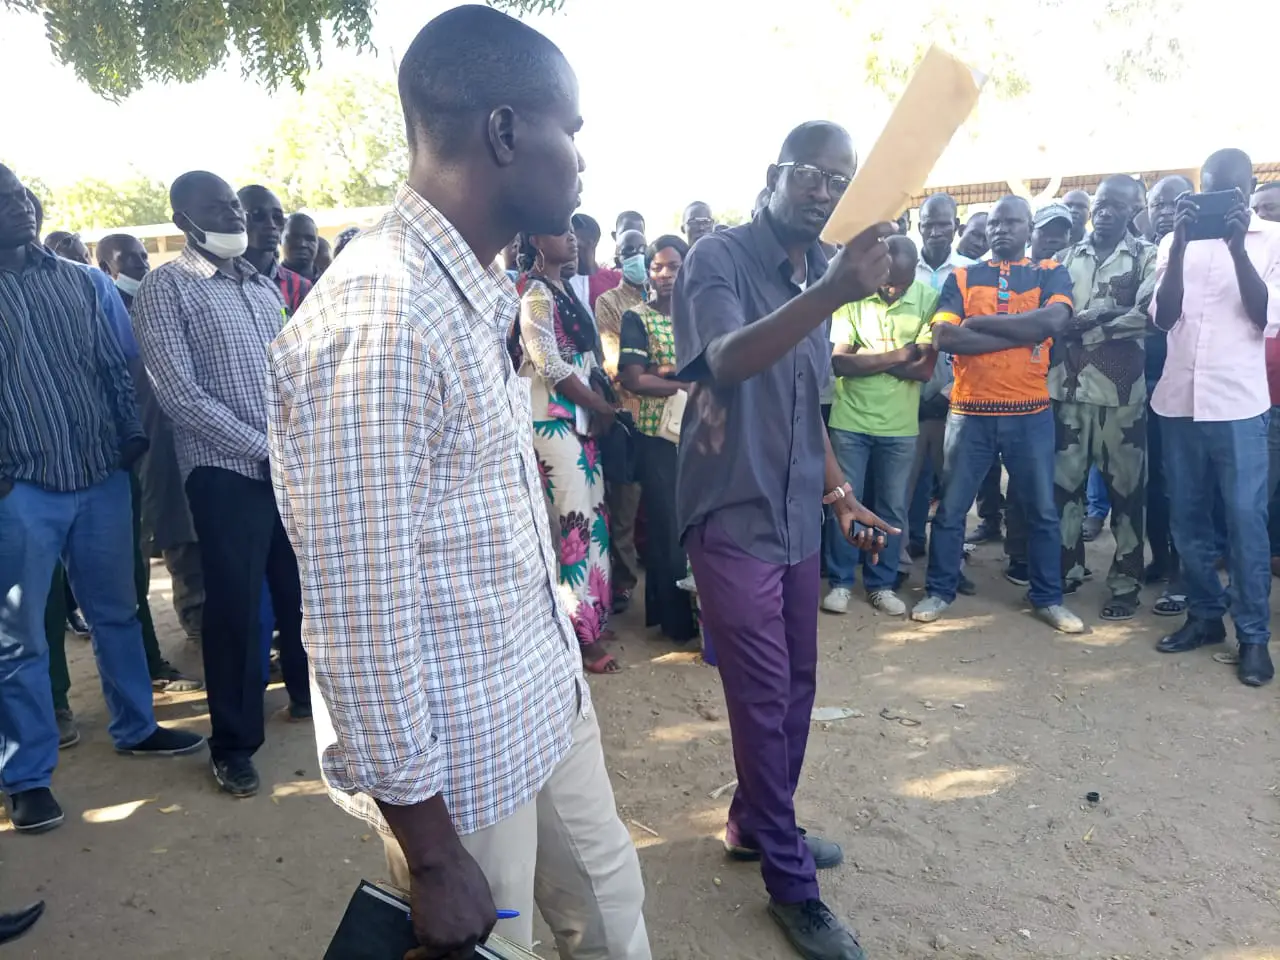 Tchad : les lauréats de l'éducation s'activent pour le forum des jeunes sans emploi